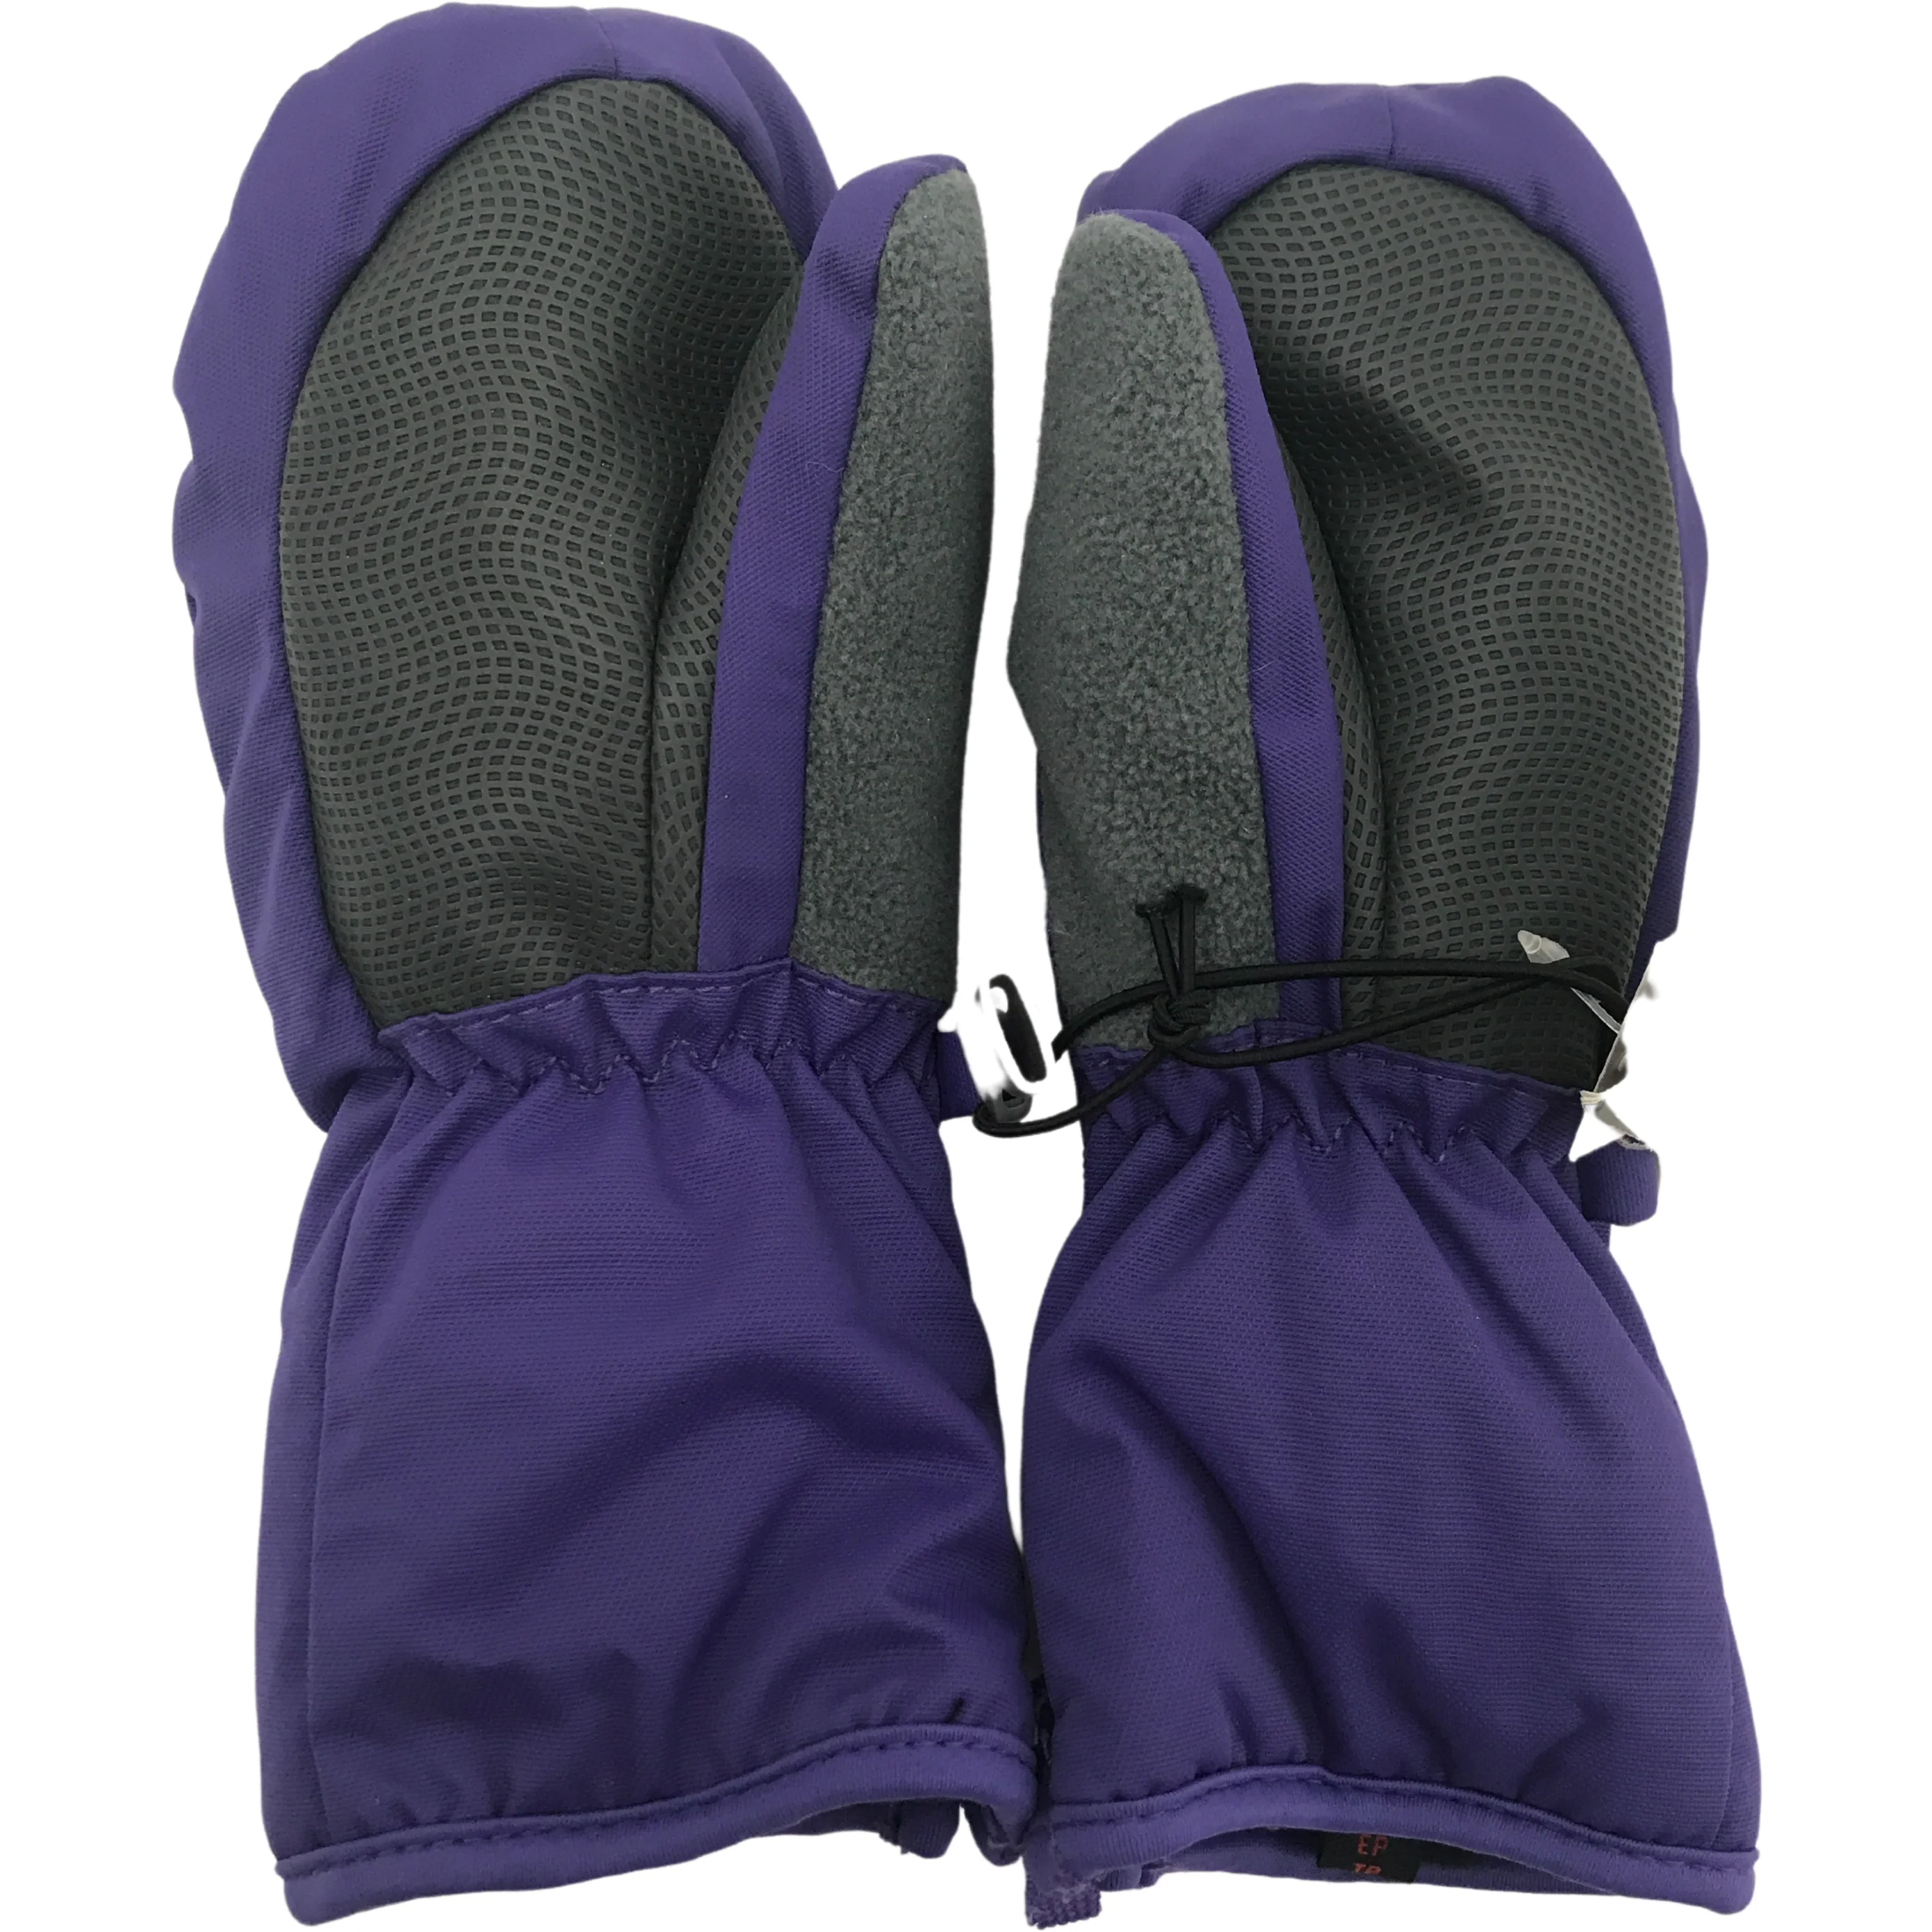 Head Children's Winter Gloves / Girl's Winter Gloves / Purple / Various Sizes